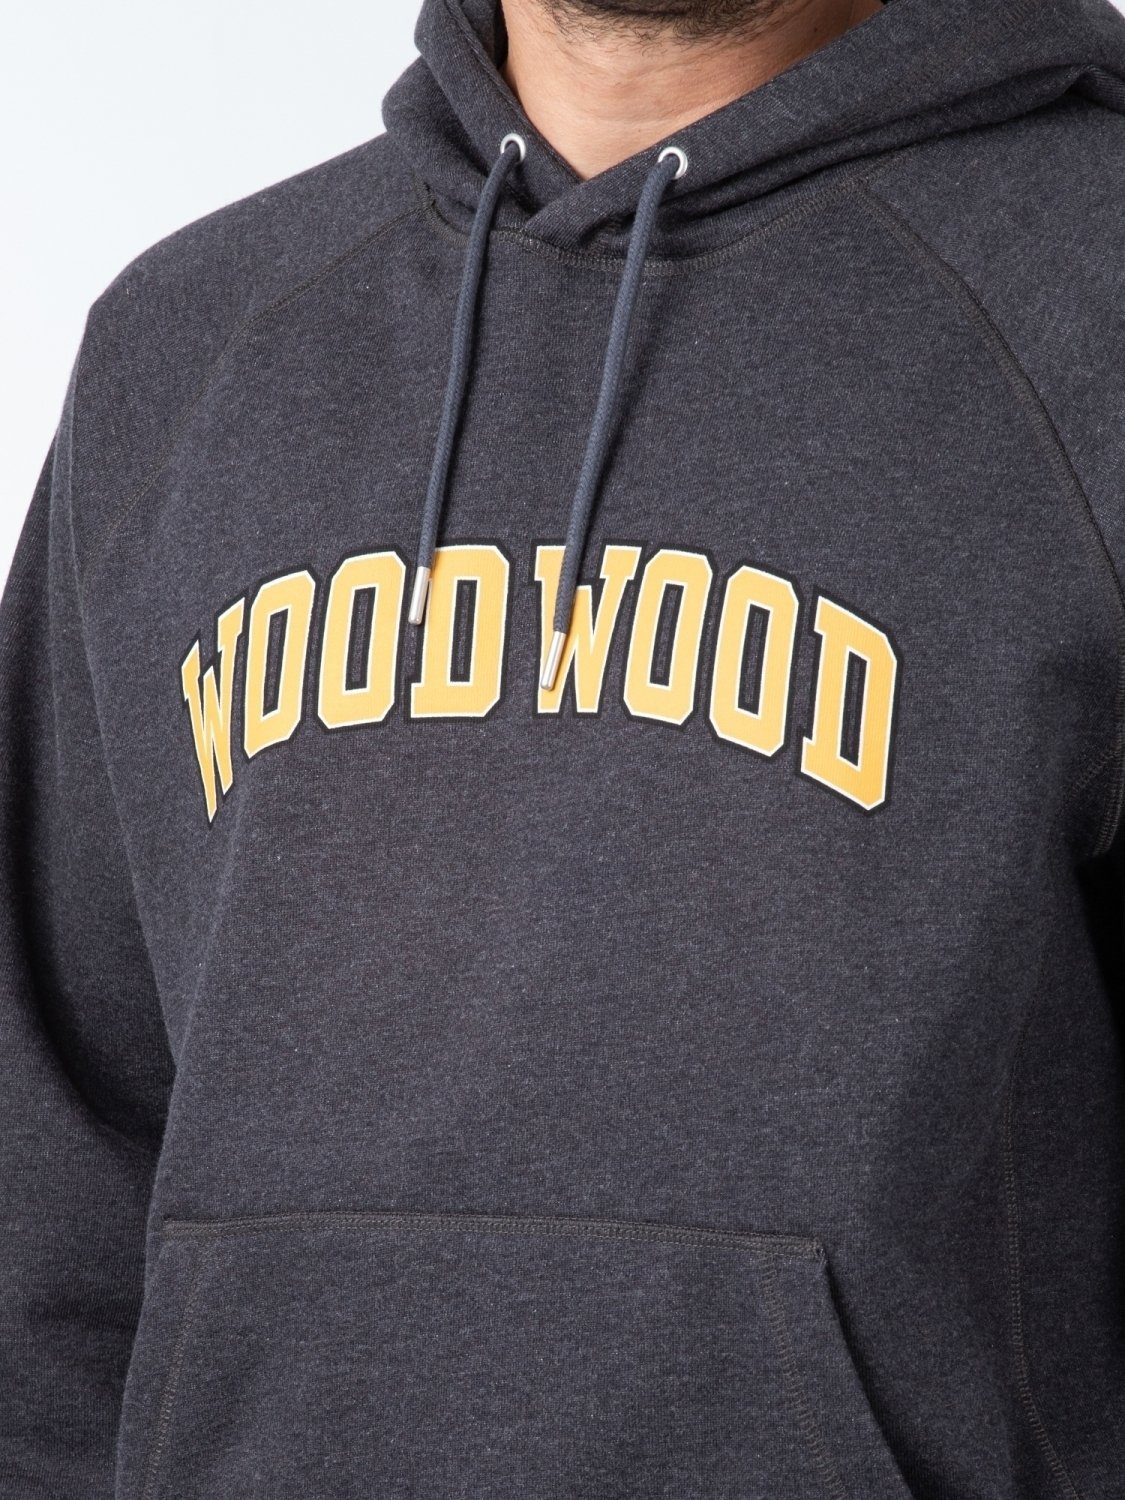 WOOD WOOD Sweater IVY Hoodie Fred Wood Wood